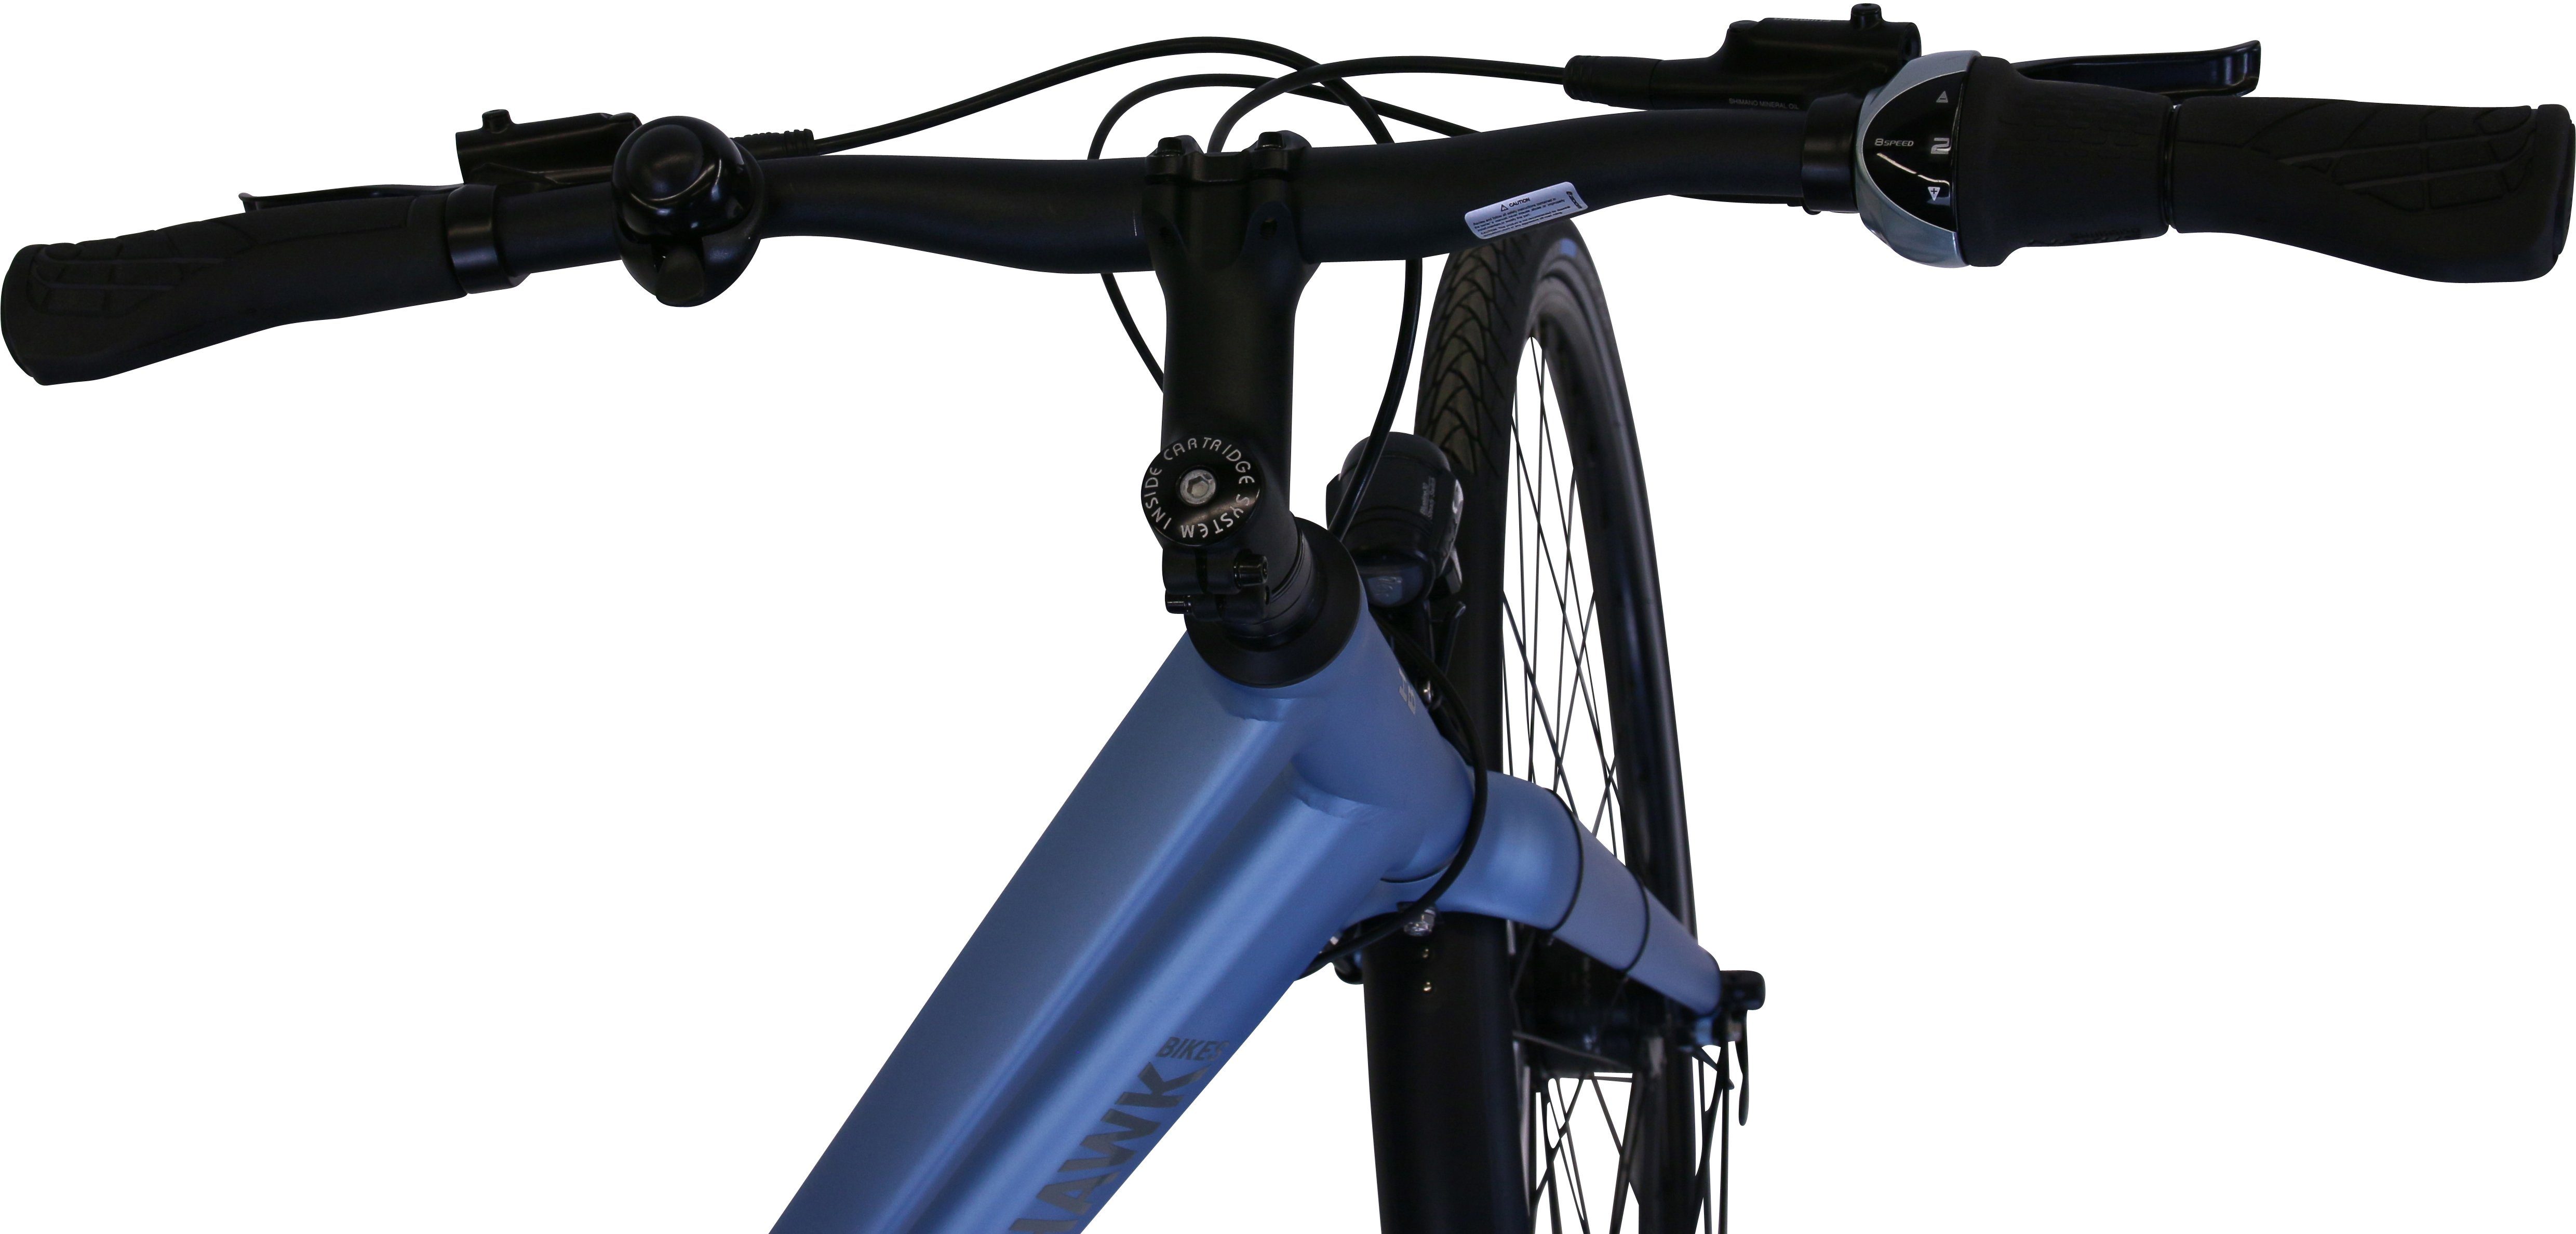 HAWK Skye blue, Super Shimano HAWK Nexus Trekking Bikes 8 Trekkingrad Lady Deluxe Schaltwerk Gang